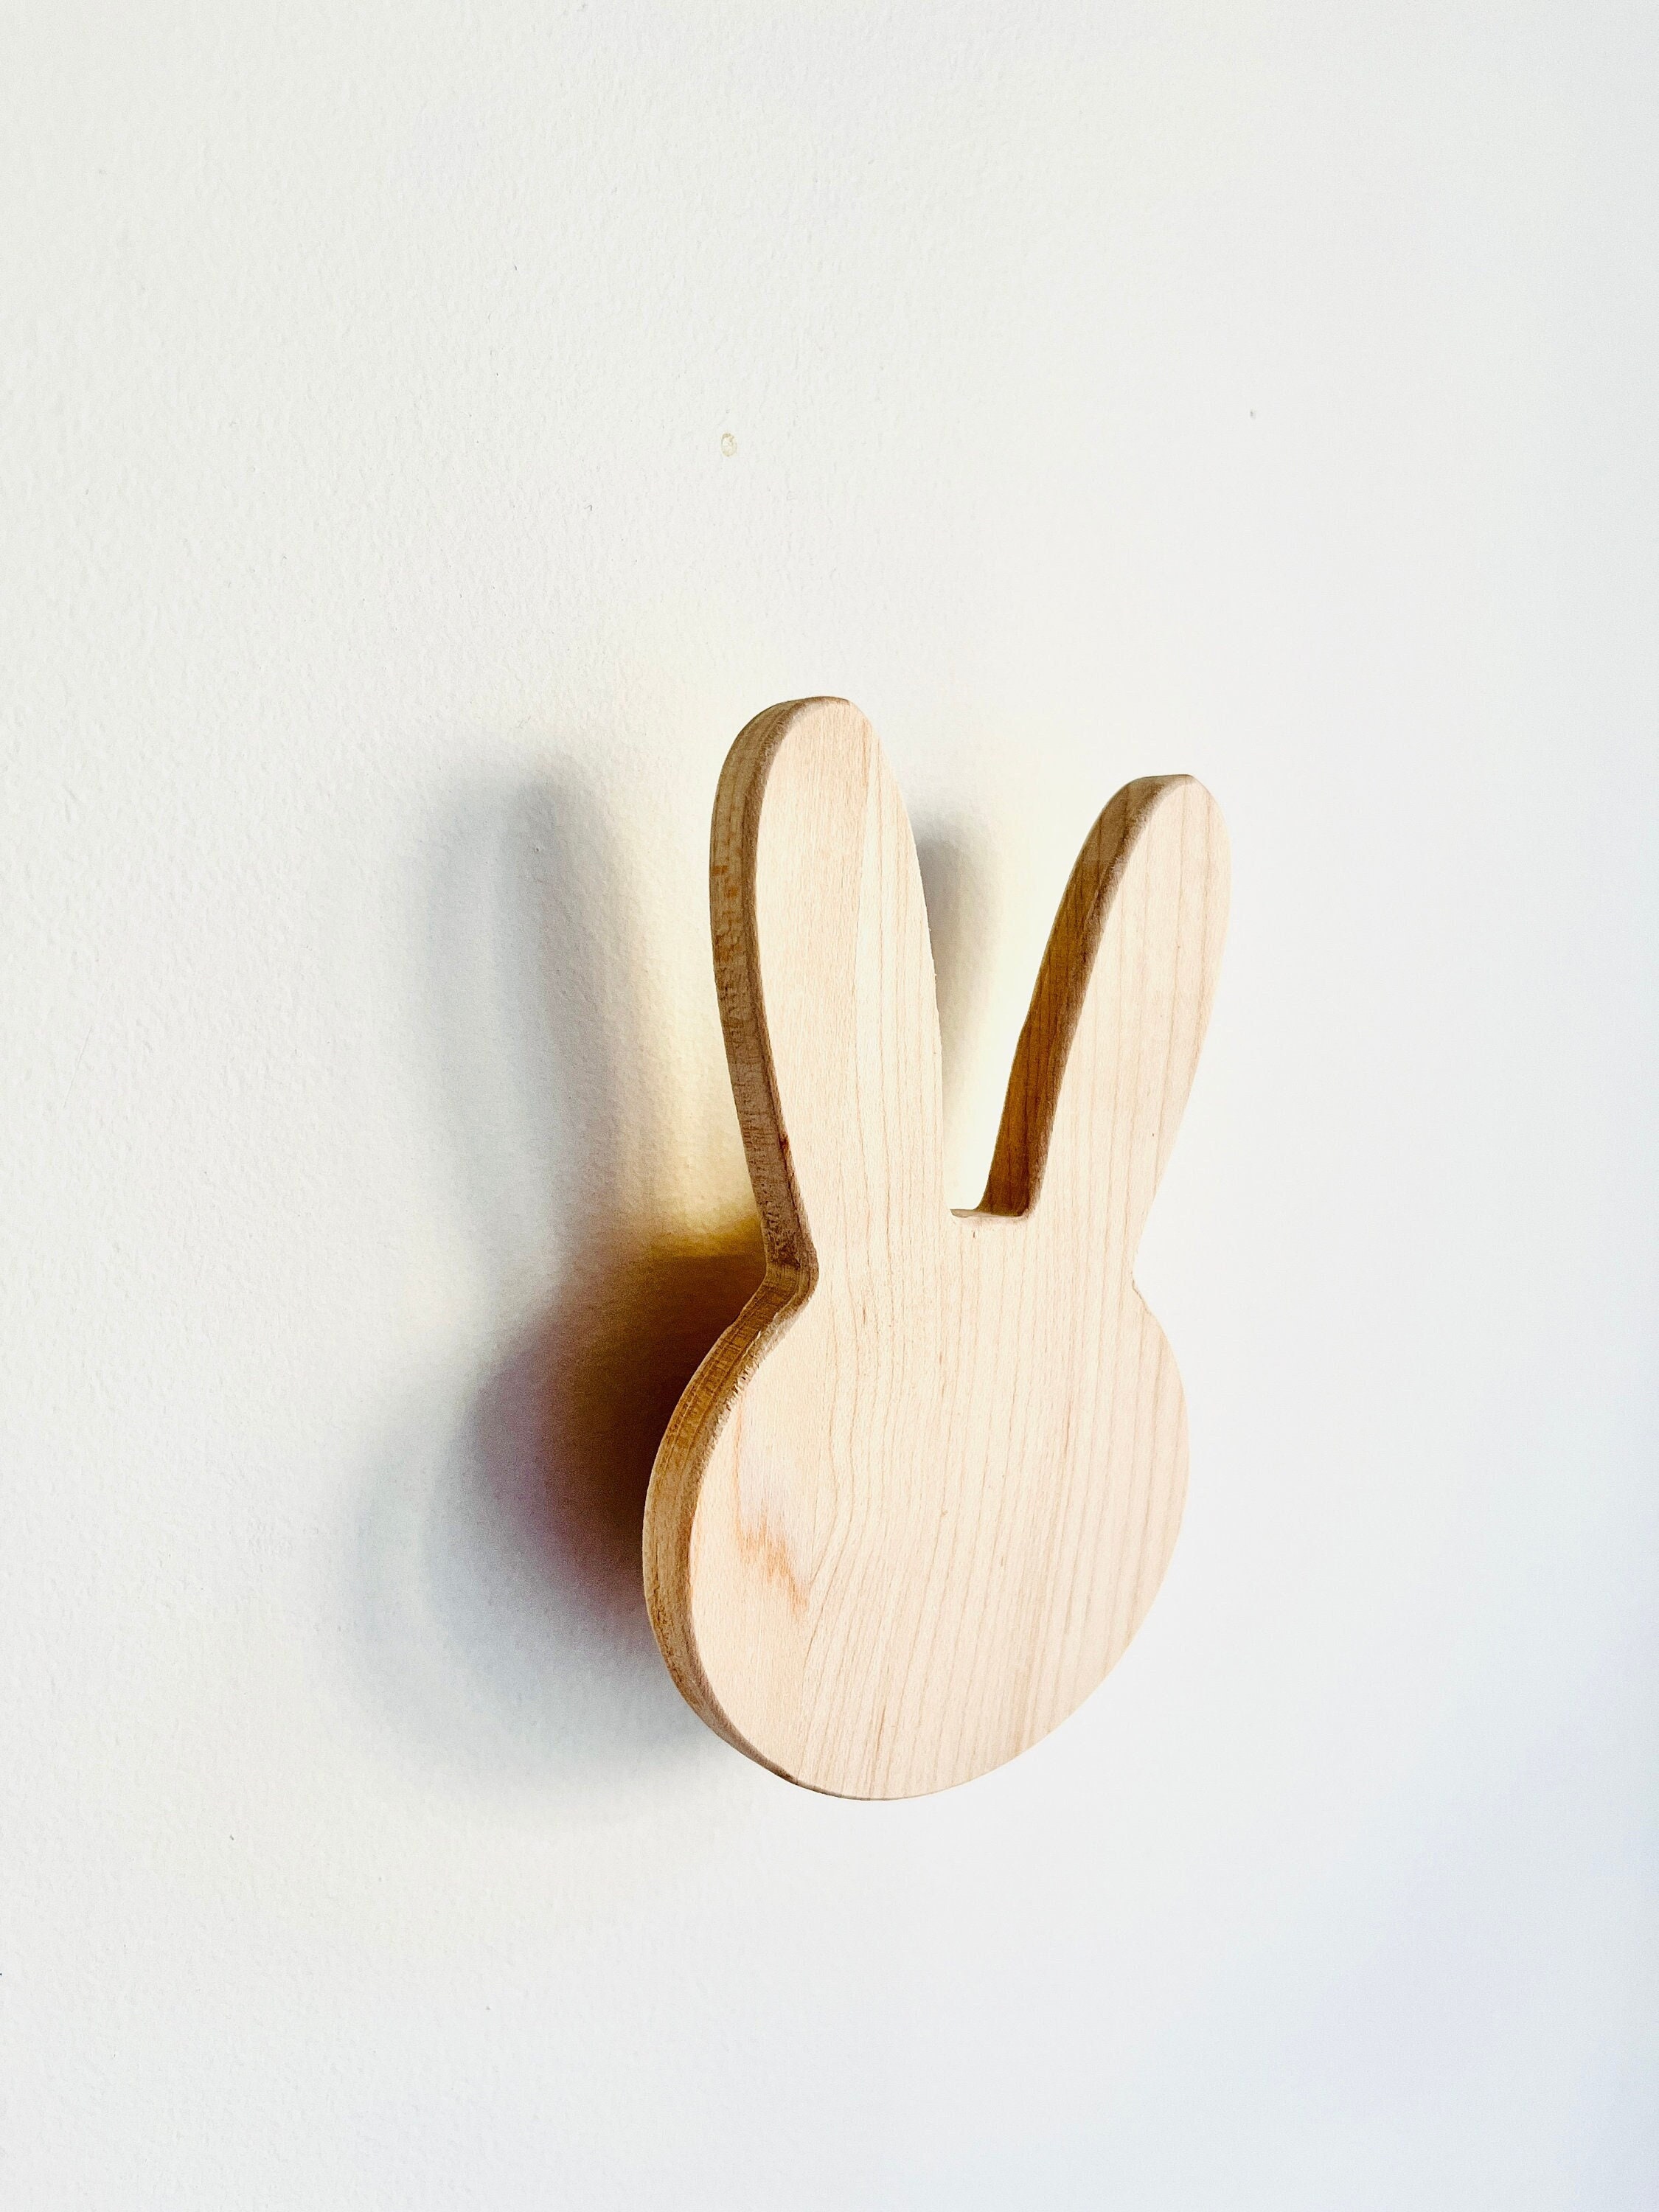 Rabbit Wall Hook Wooden Coat Hook, Key Holder for Modern Home Decor Wood  Furniture, Cabinet, Drawer Knob for Kids Bedroom, Nursery Decor 